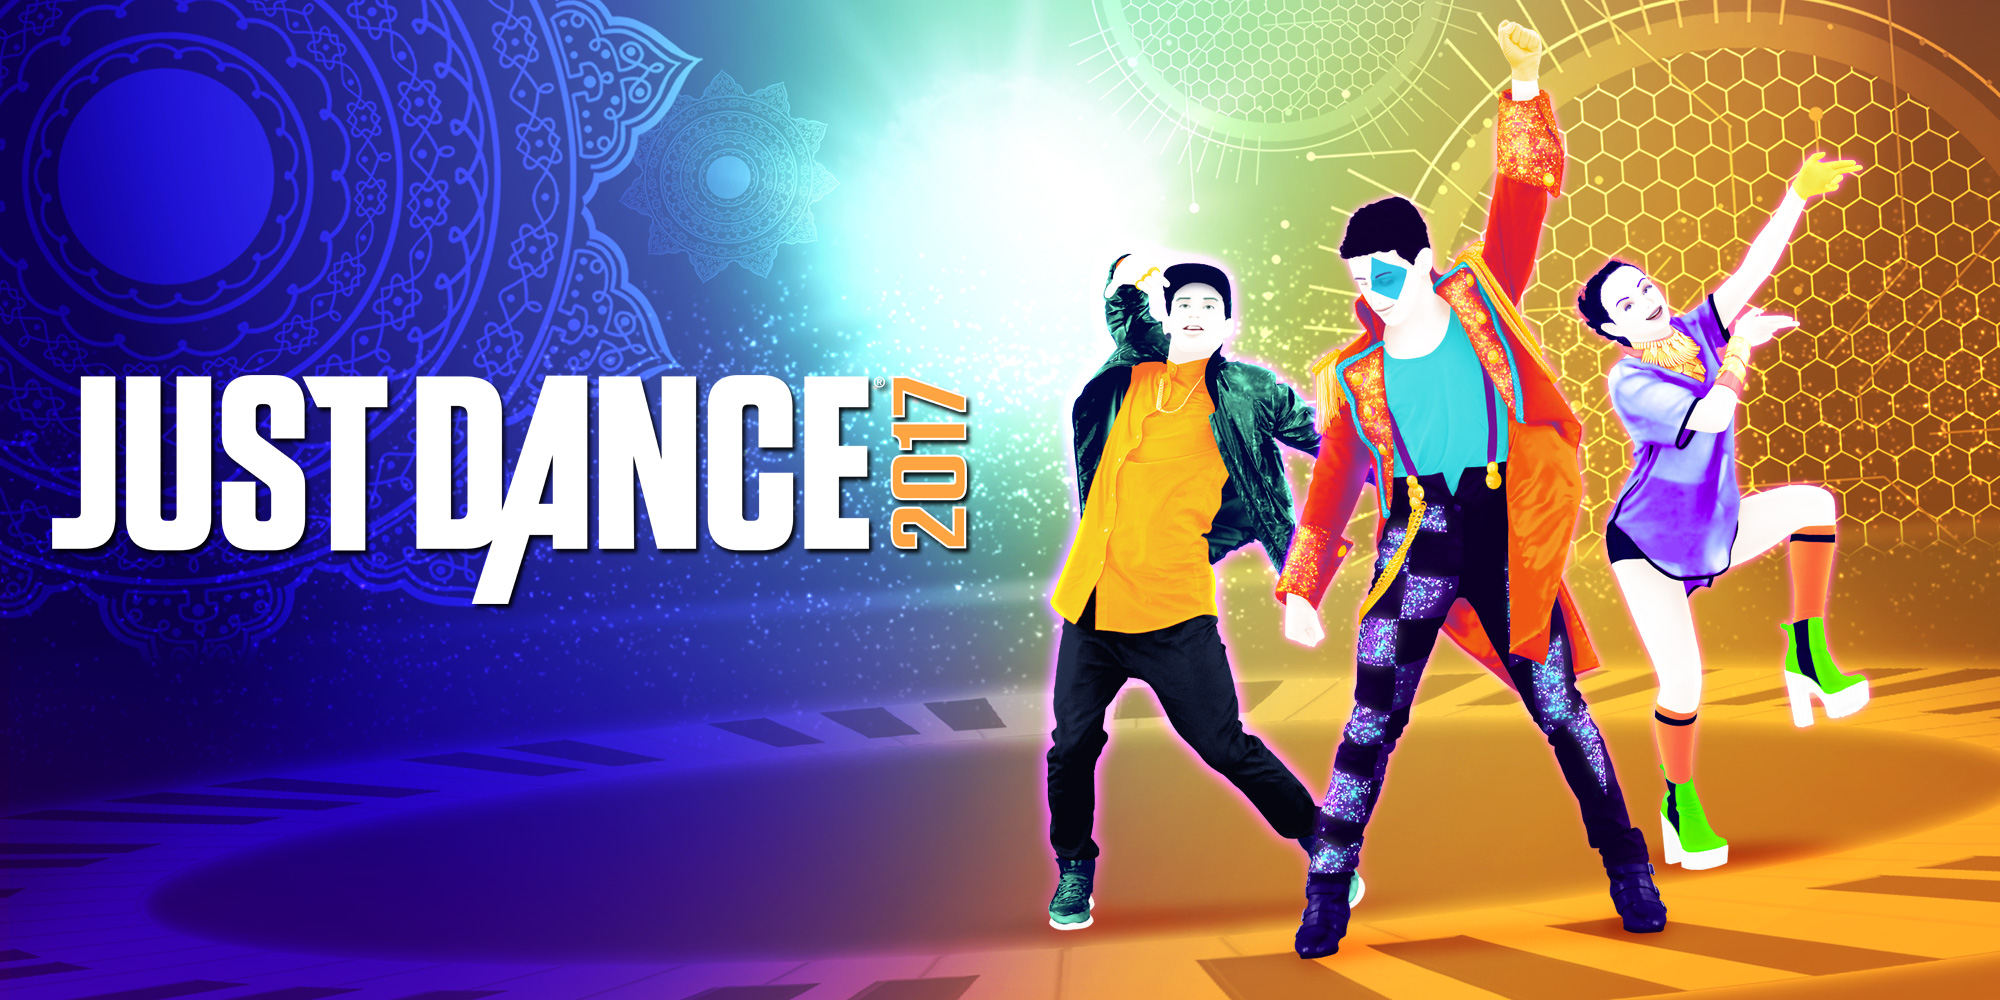 Just Dance Kpop Wii Download